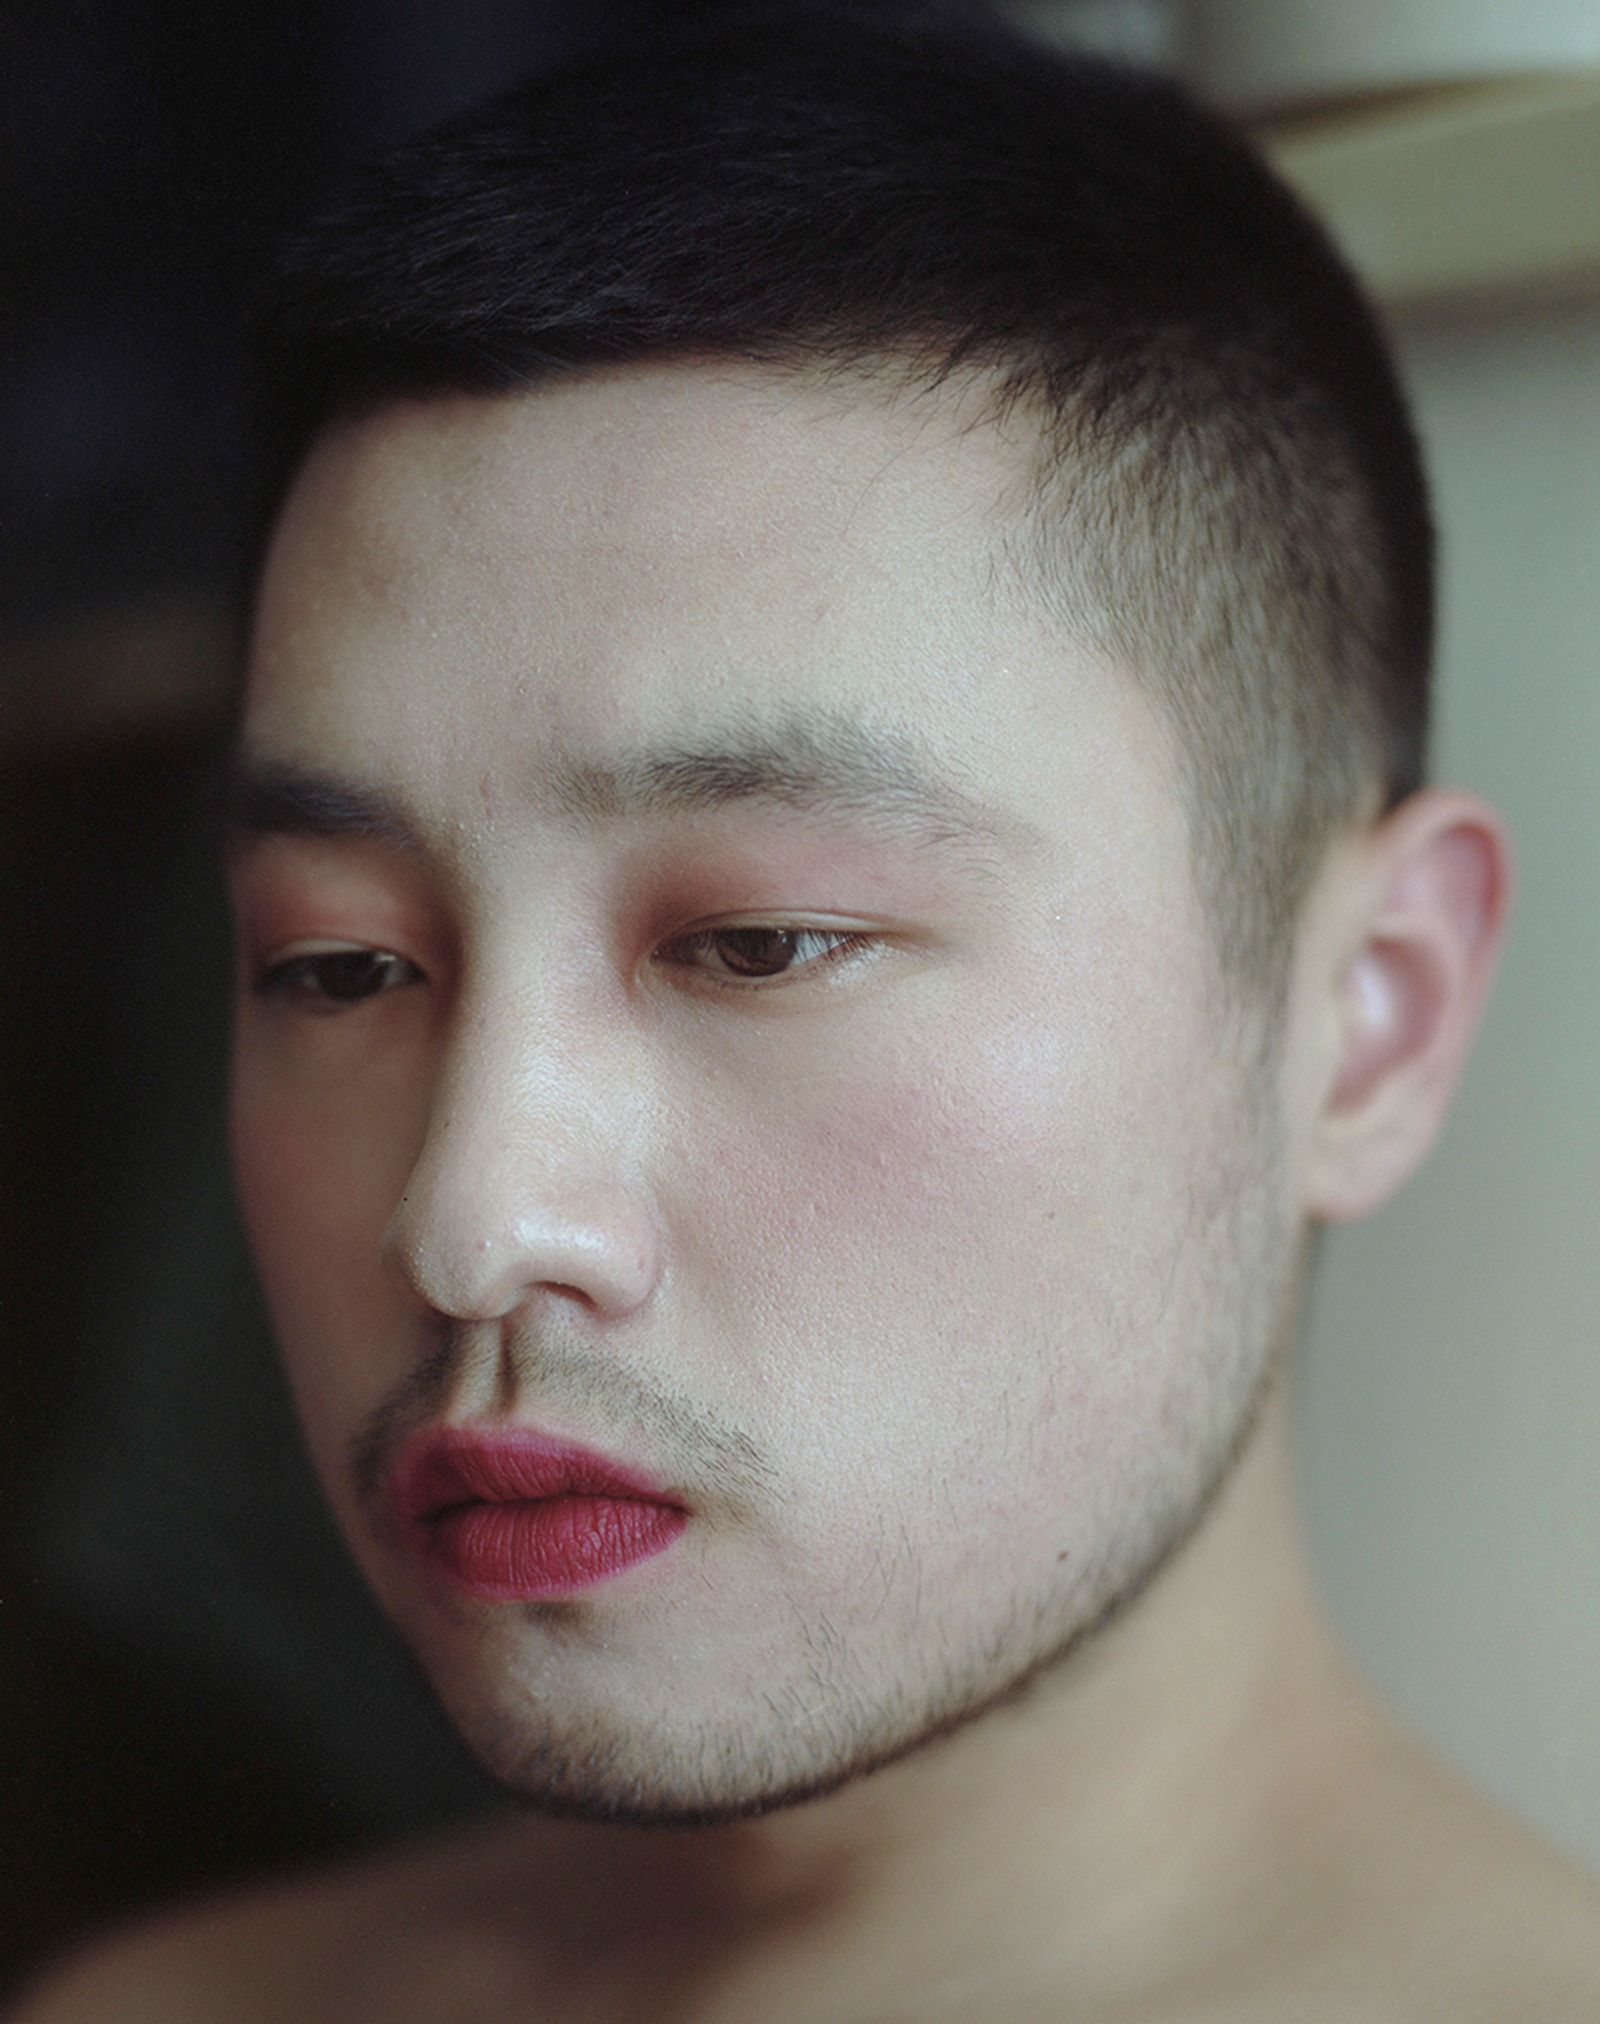 © Bowei Yang - Zhu and his makeup, Beijing, China, 2016.